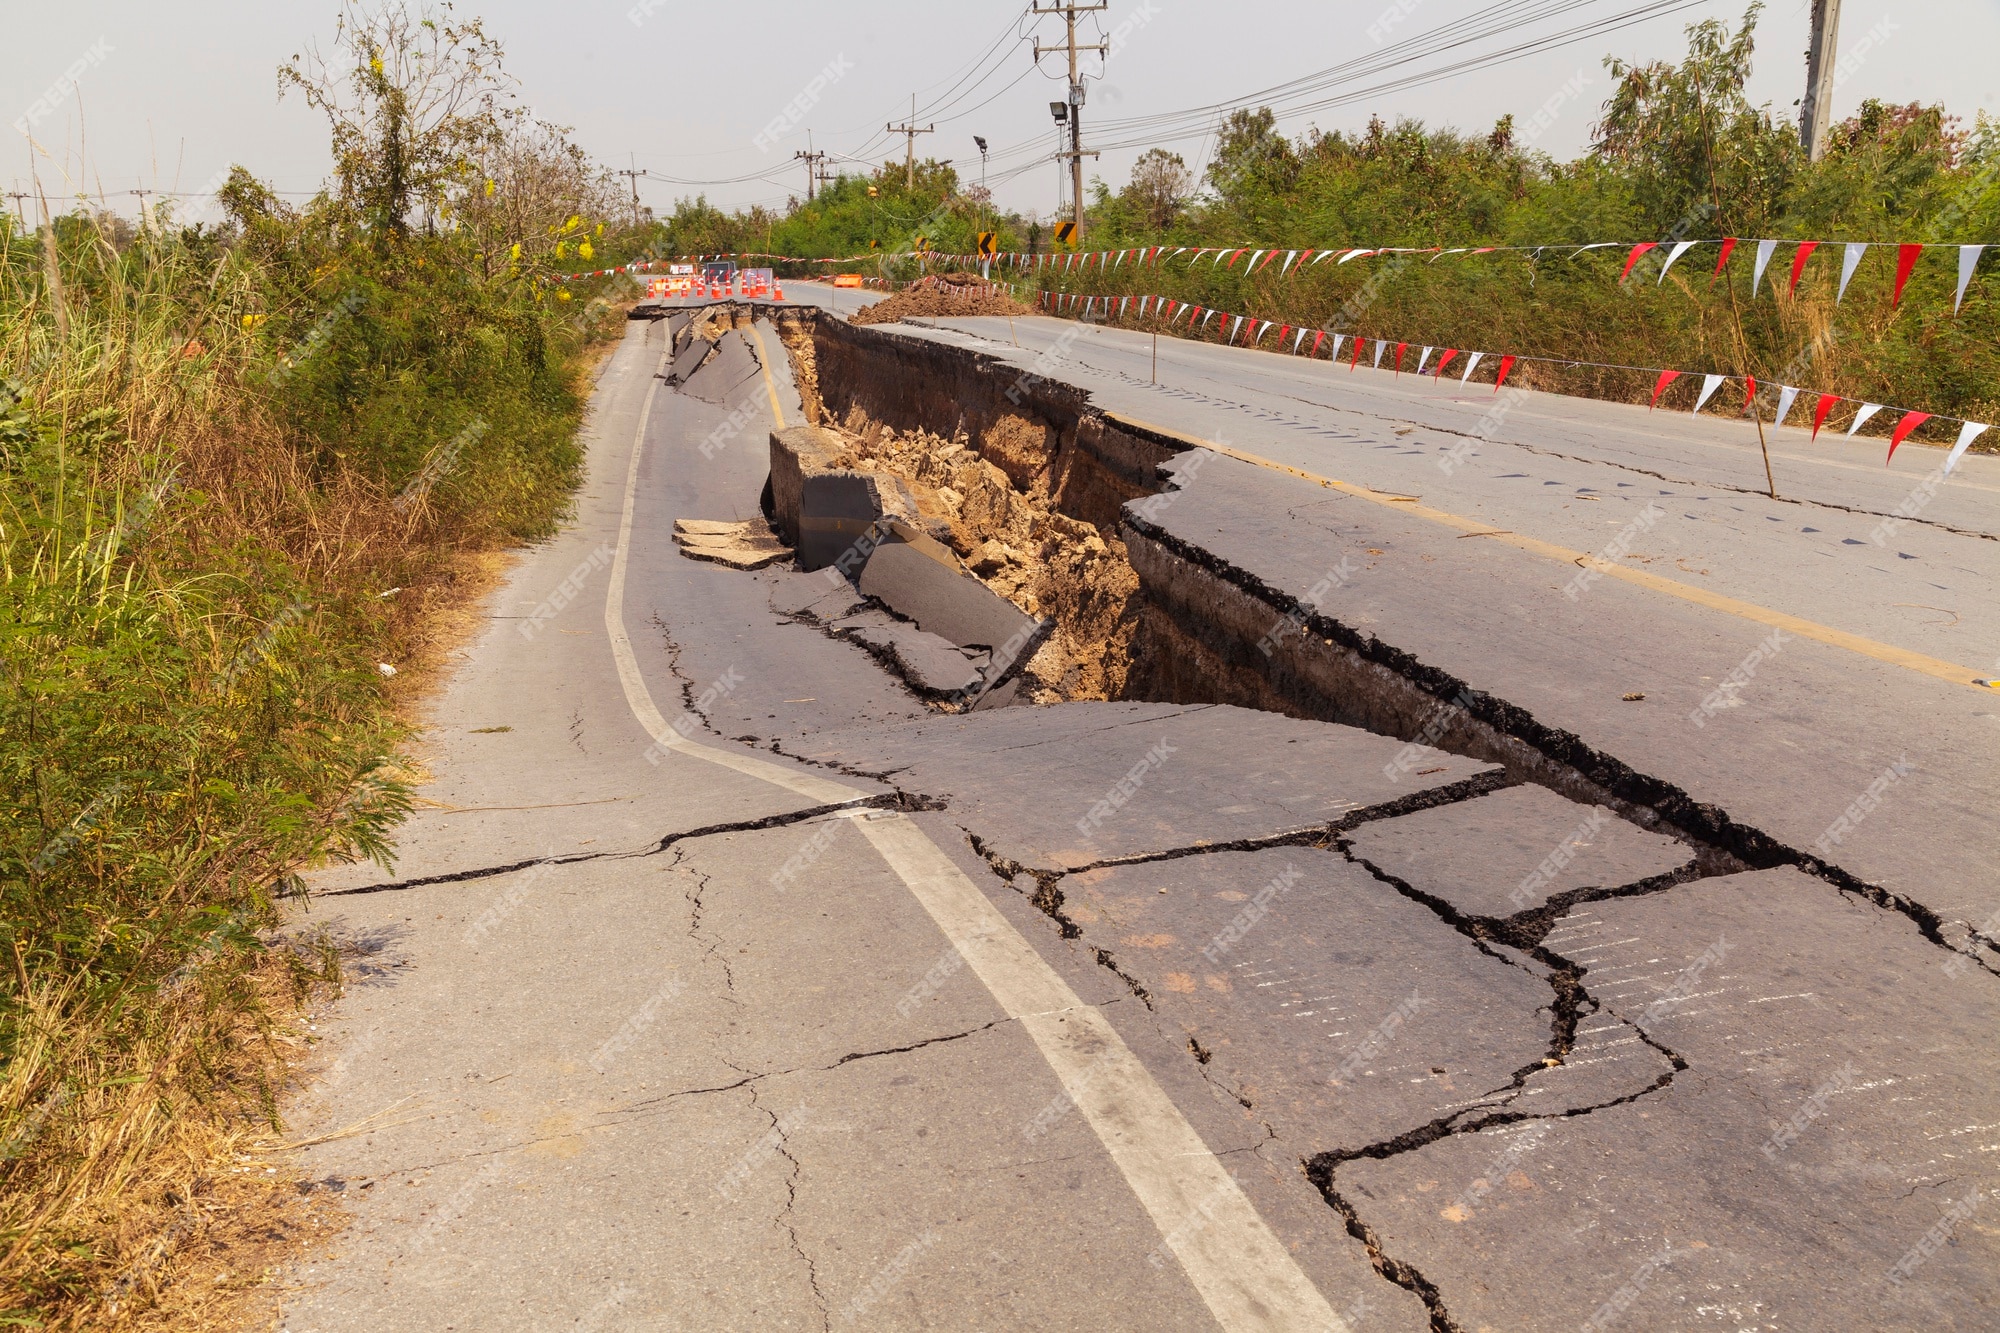 Через несколько минут в городе началась. Землетрясение в Таджикистане. Картинки землетрясений сломанные дороги. Землетрясение в Худжанде сегодня. Землетрясение в болу фото.